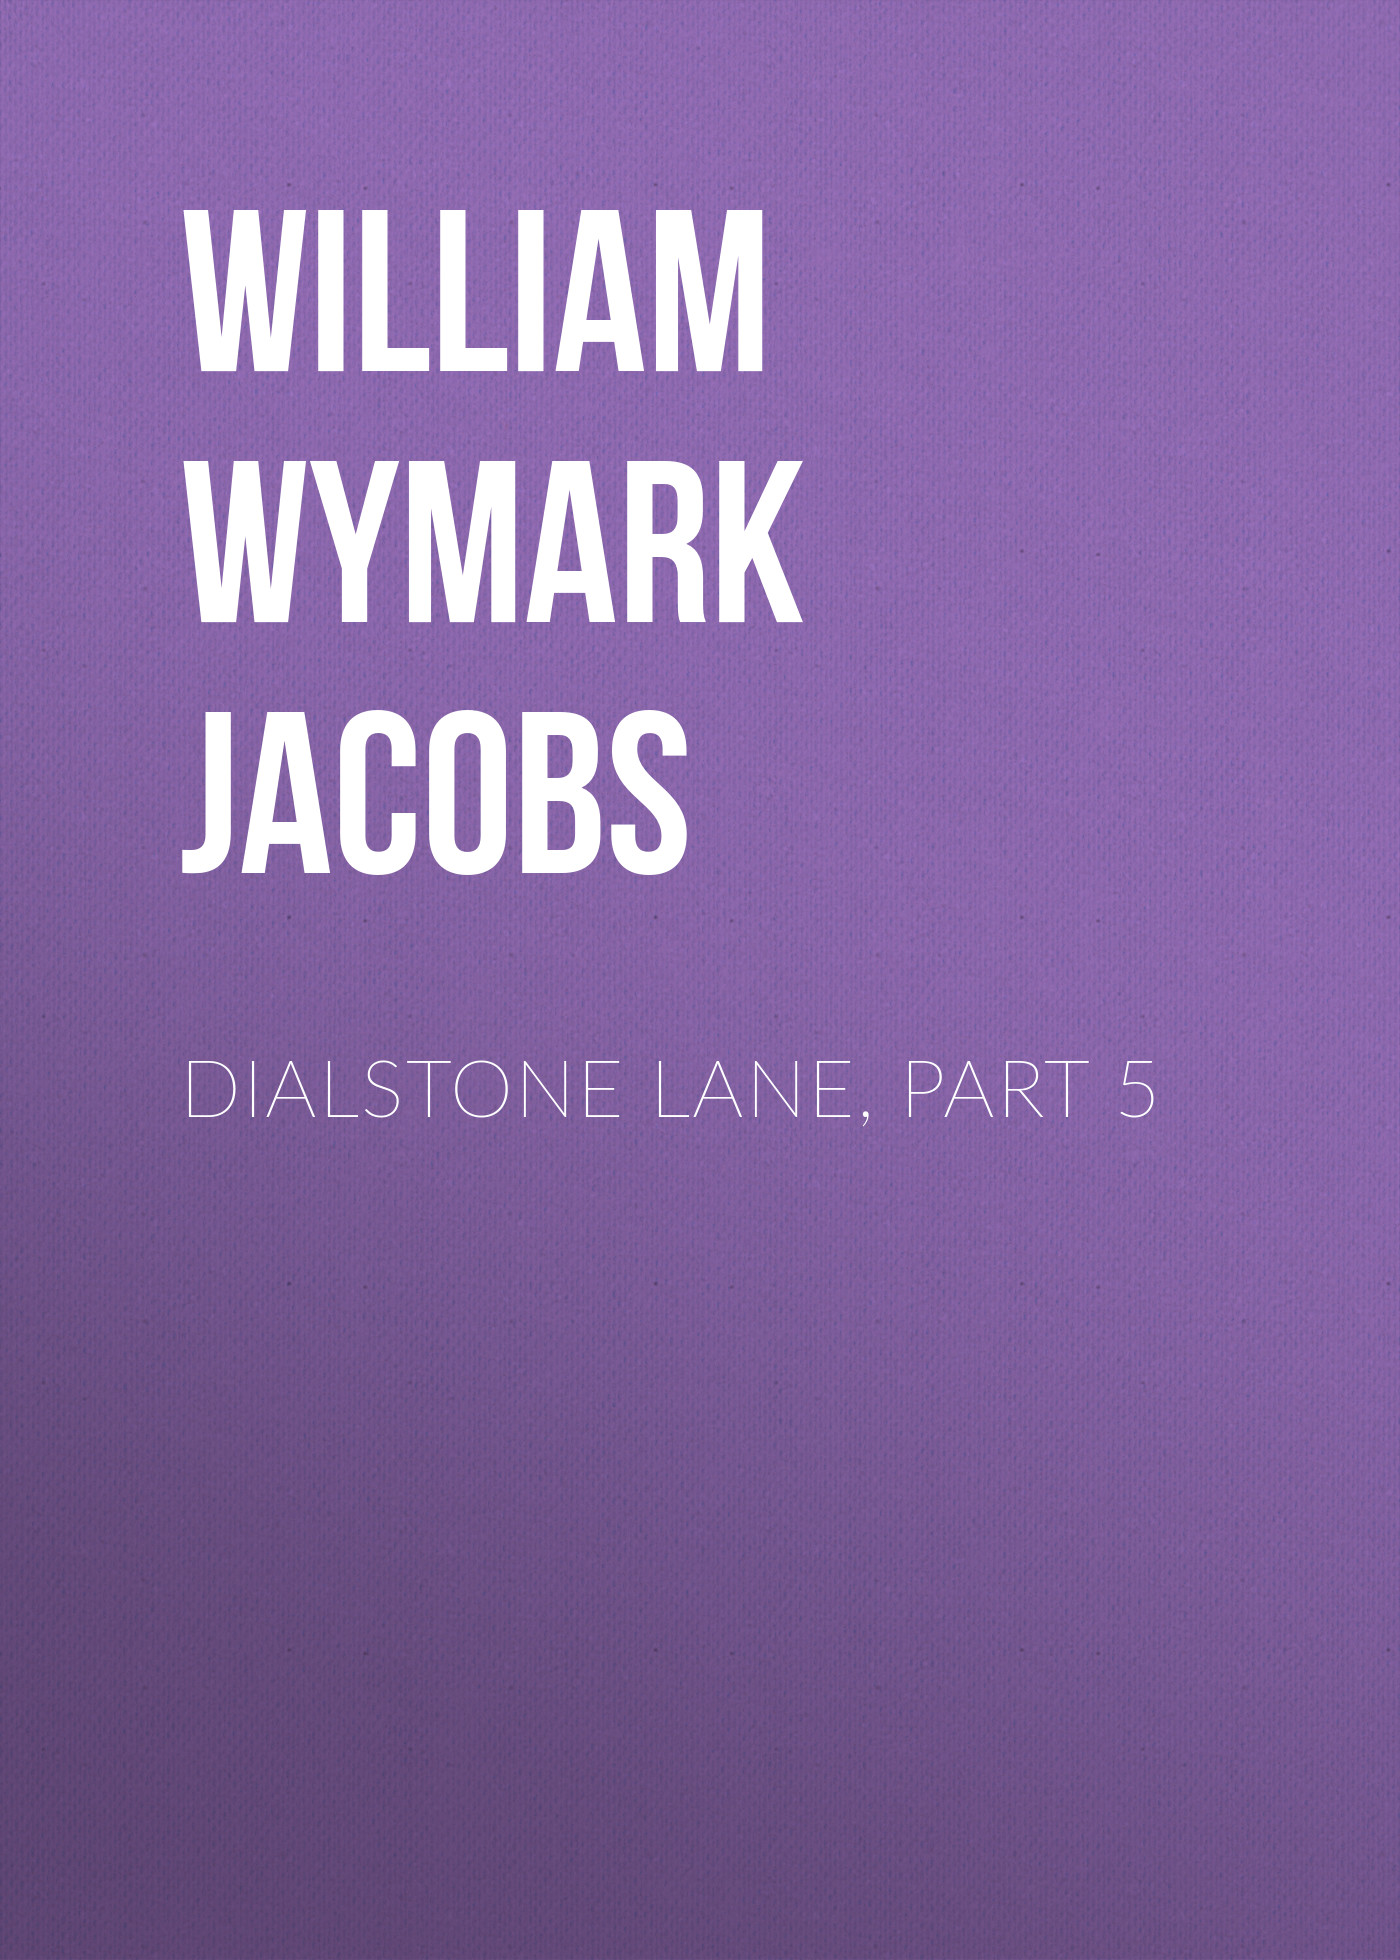 Книга Dialstone Lane, Part 5 из серии , созданная William Wymark Jacobs, может относится к жанру Книги о Путешествиях, Зарубежная старинная литература, Зарубежная классика. Стоимость электронной книги Dialstone Lane, Part 5 с идентификатором 34844262 составляет 0 руб.